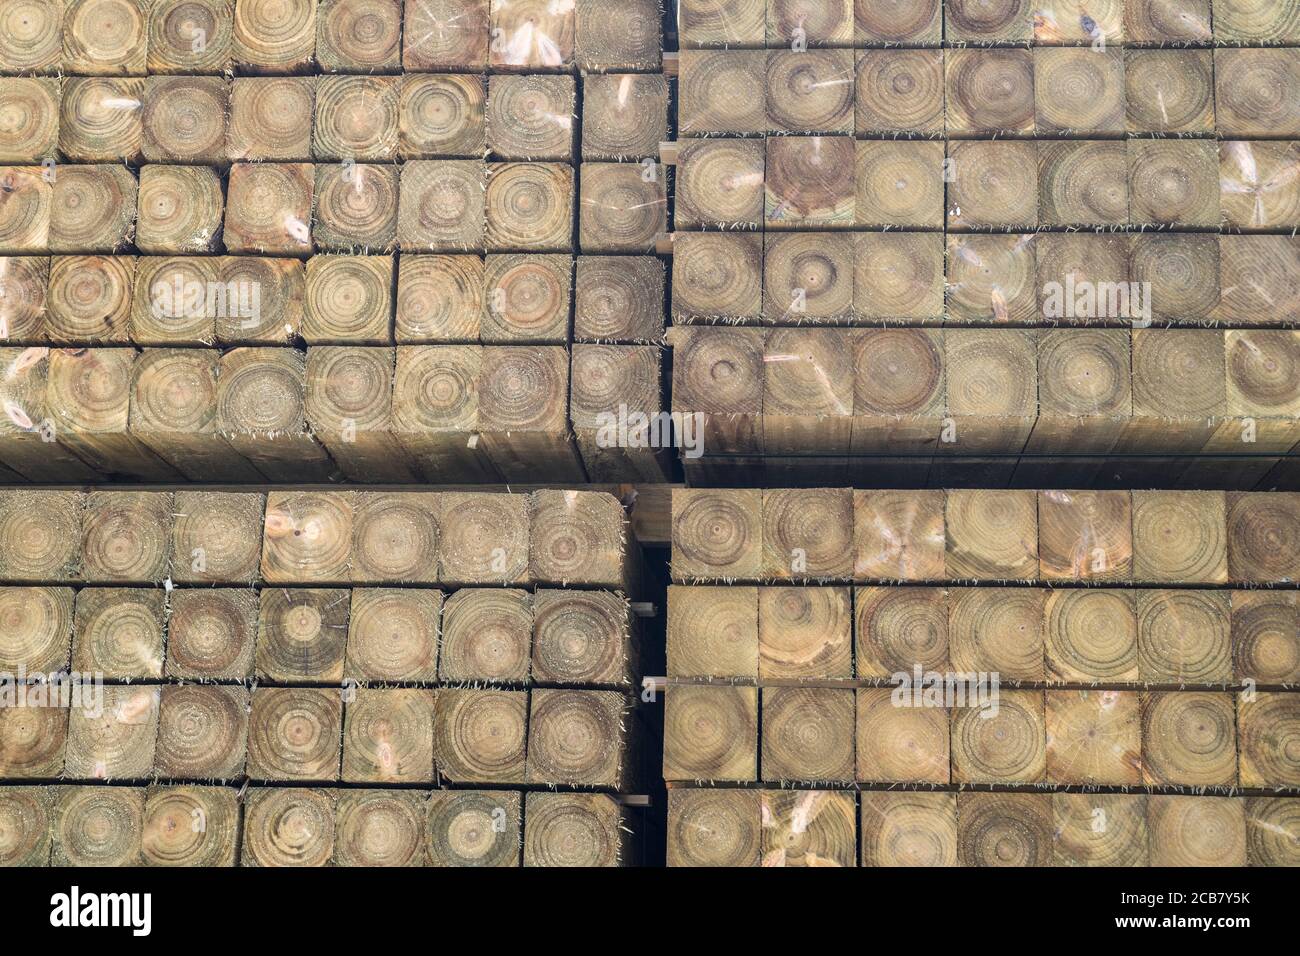 Pila de postes de esgrima de madera cuidadosamente apilados (aproximadamente 4x4 in Square), mostrando anillos de madera en círculos transversales concéntricos. Para la industria de la madera, y aseado Foto de stock